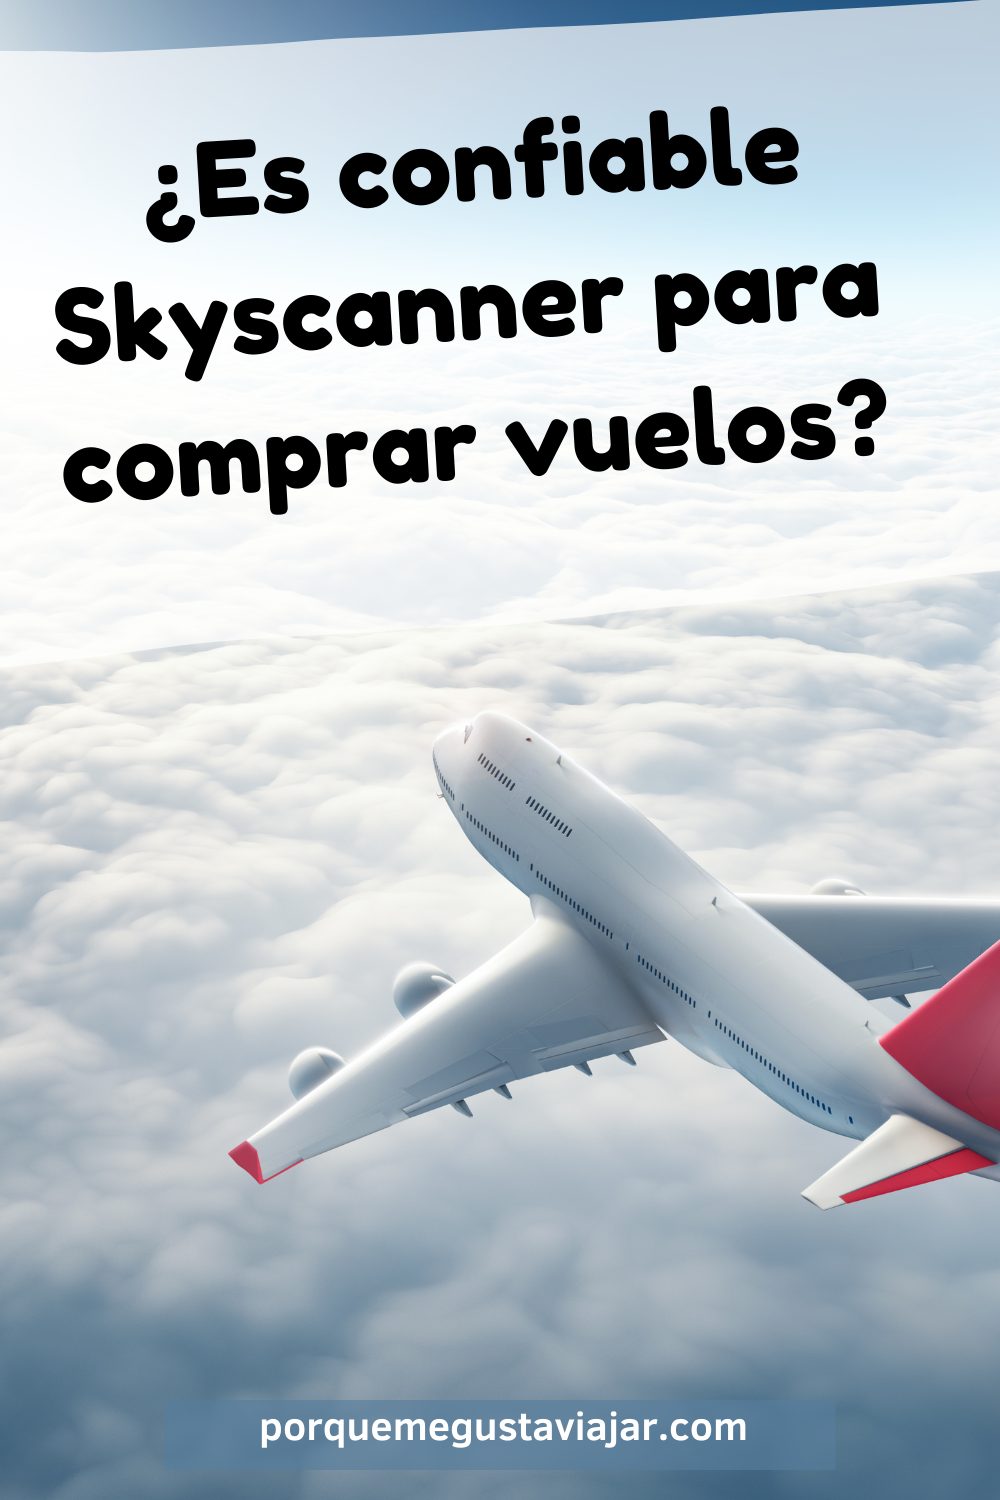 ¿Es confiable comprar vuelos por Skyscanner?